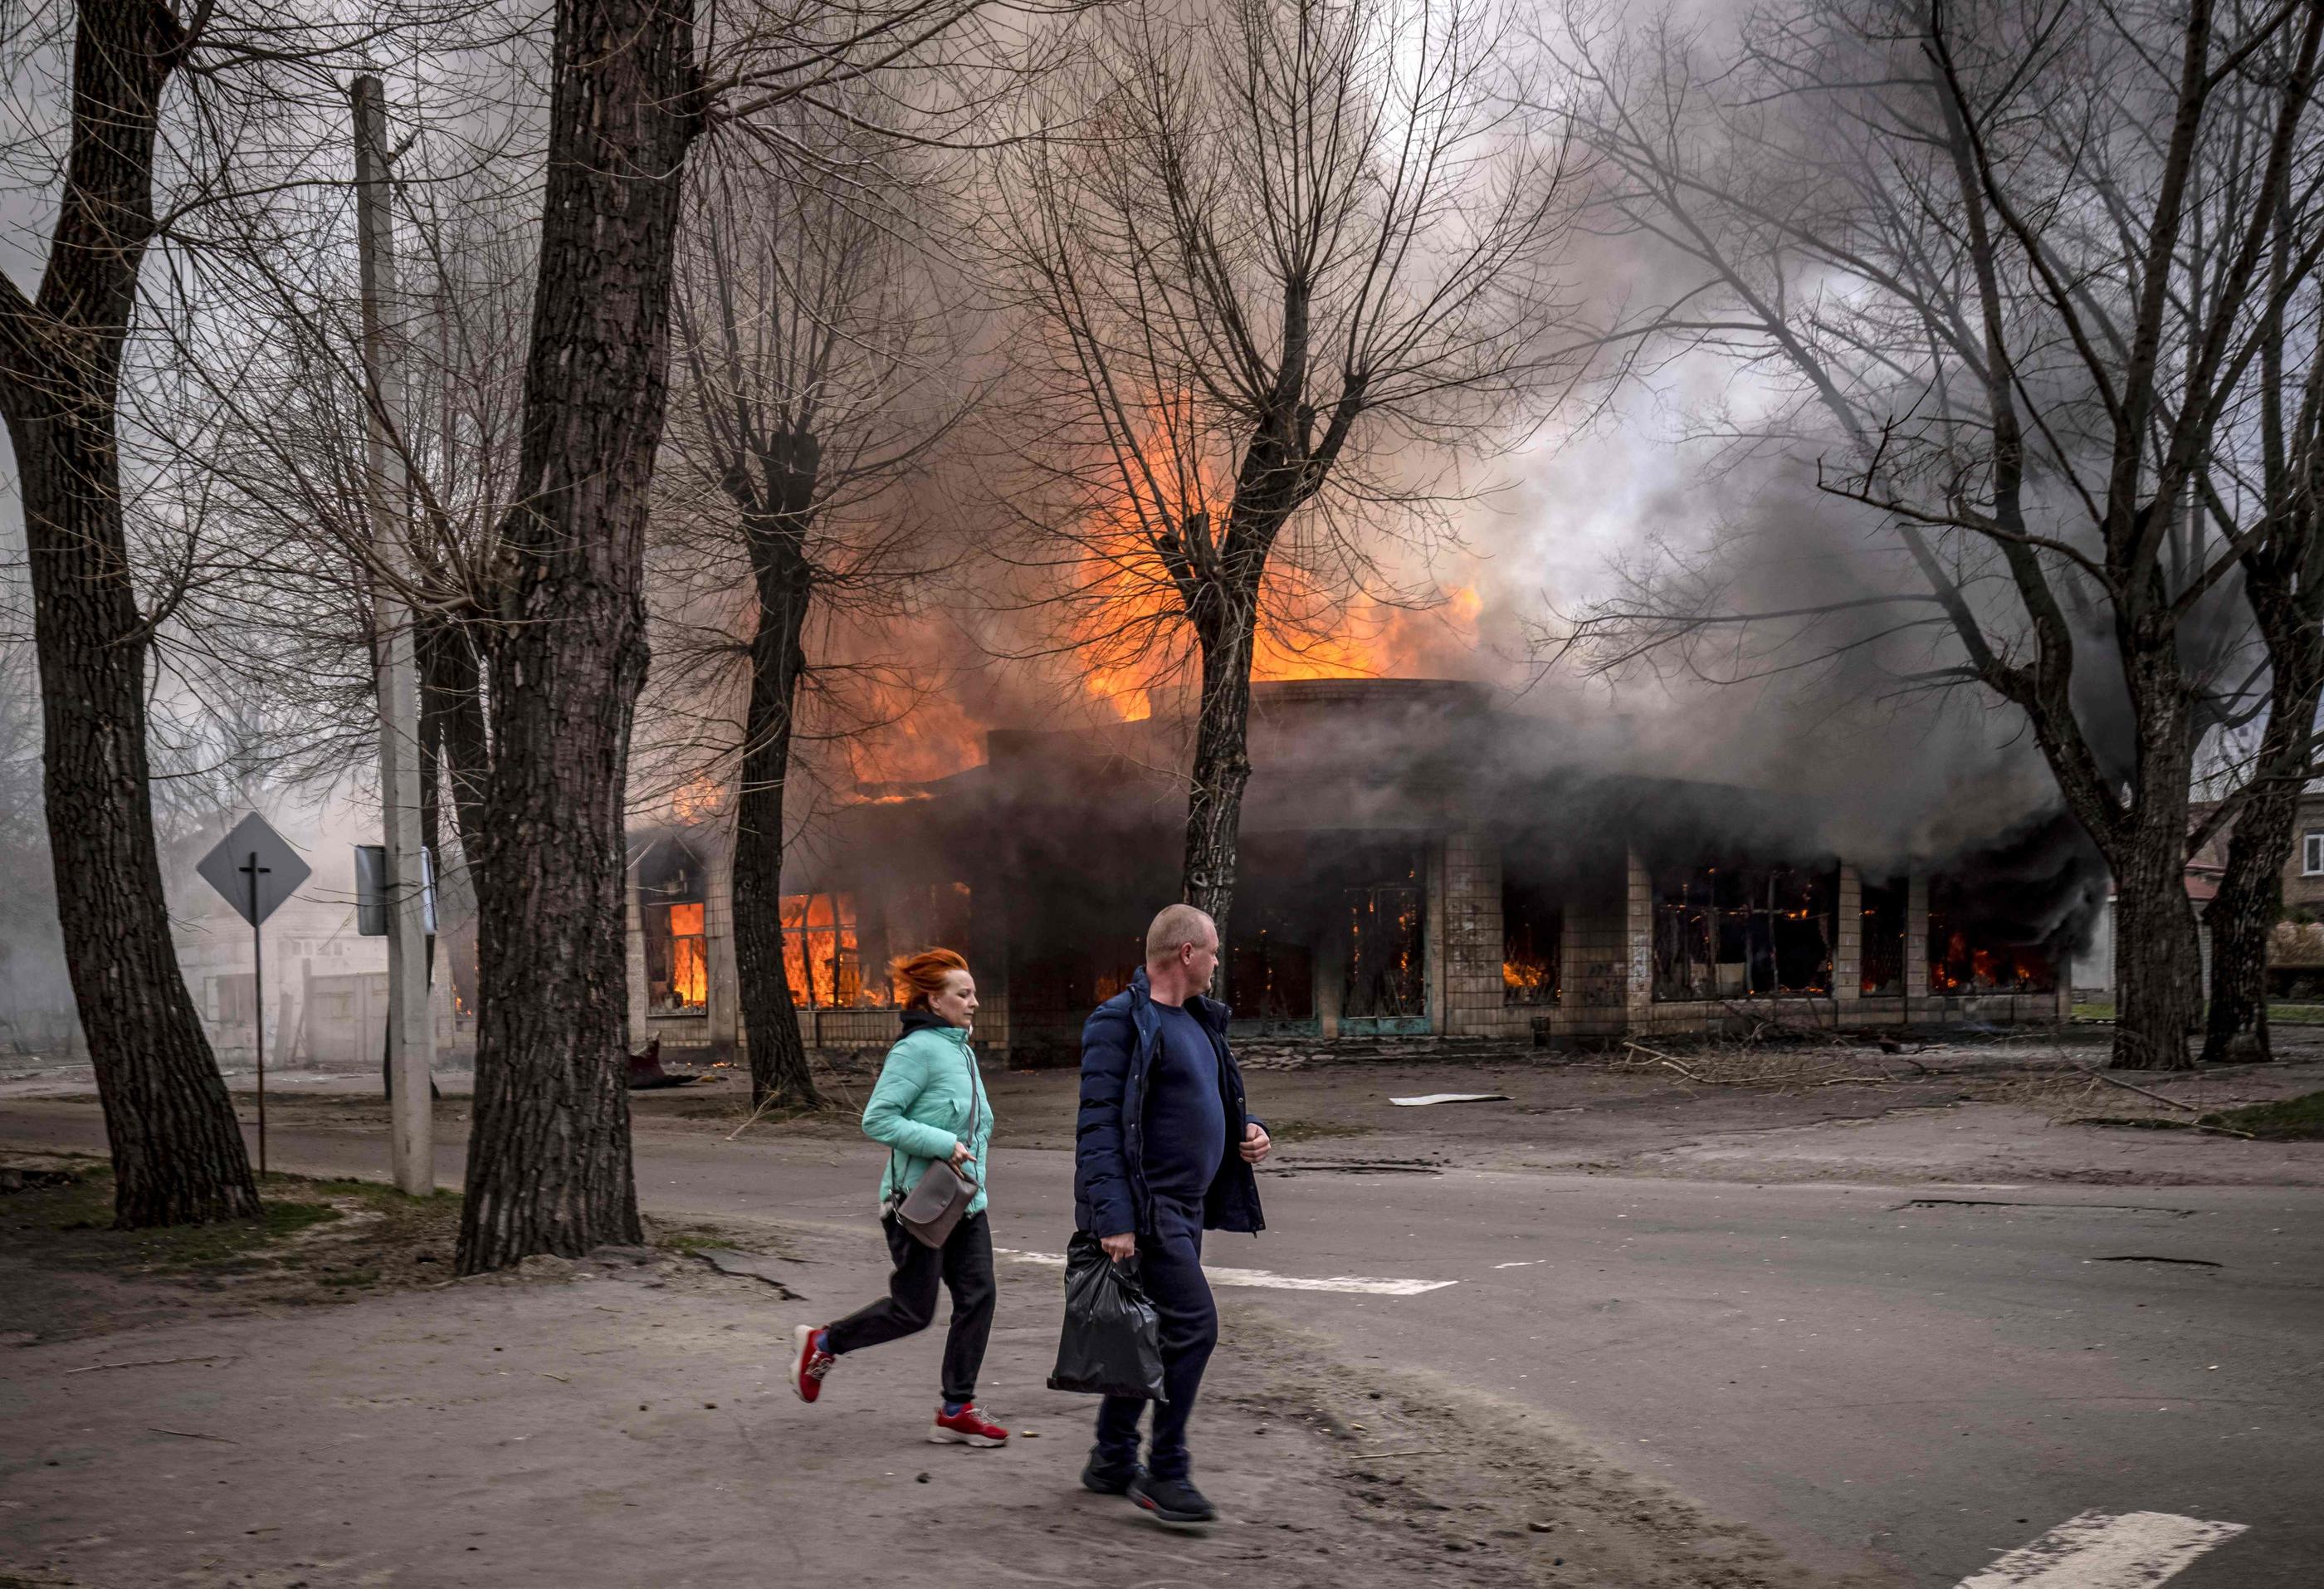 Ukraine: quatre (4) morts et sept blessés dans le bombardement d'un arrêt de bus dans le sud